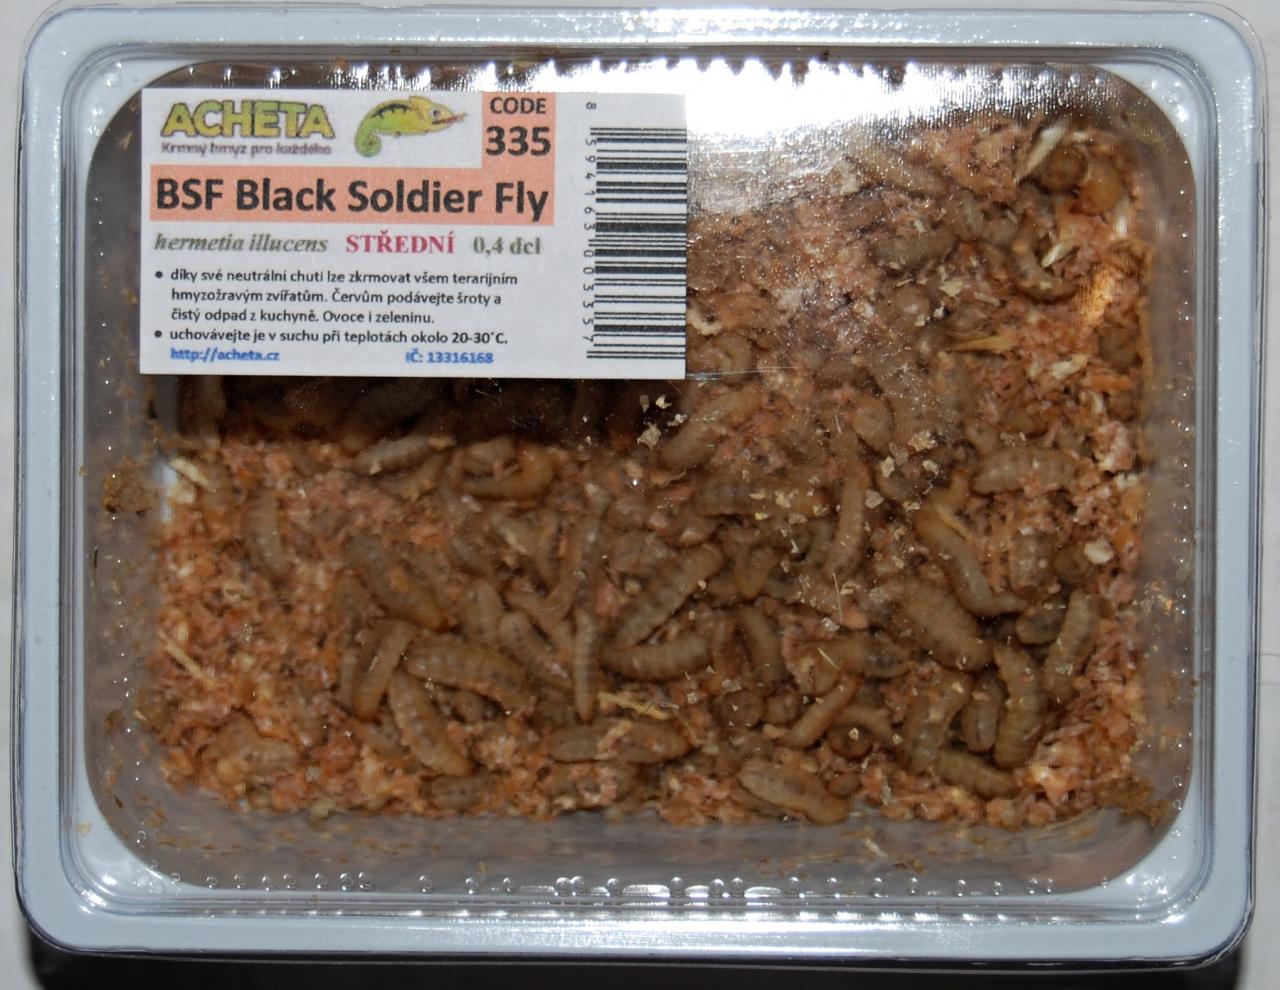 BSF Black Soldier Fly - střední velikost larvy 0,1L EuP